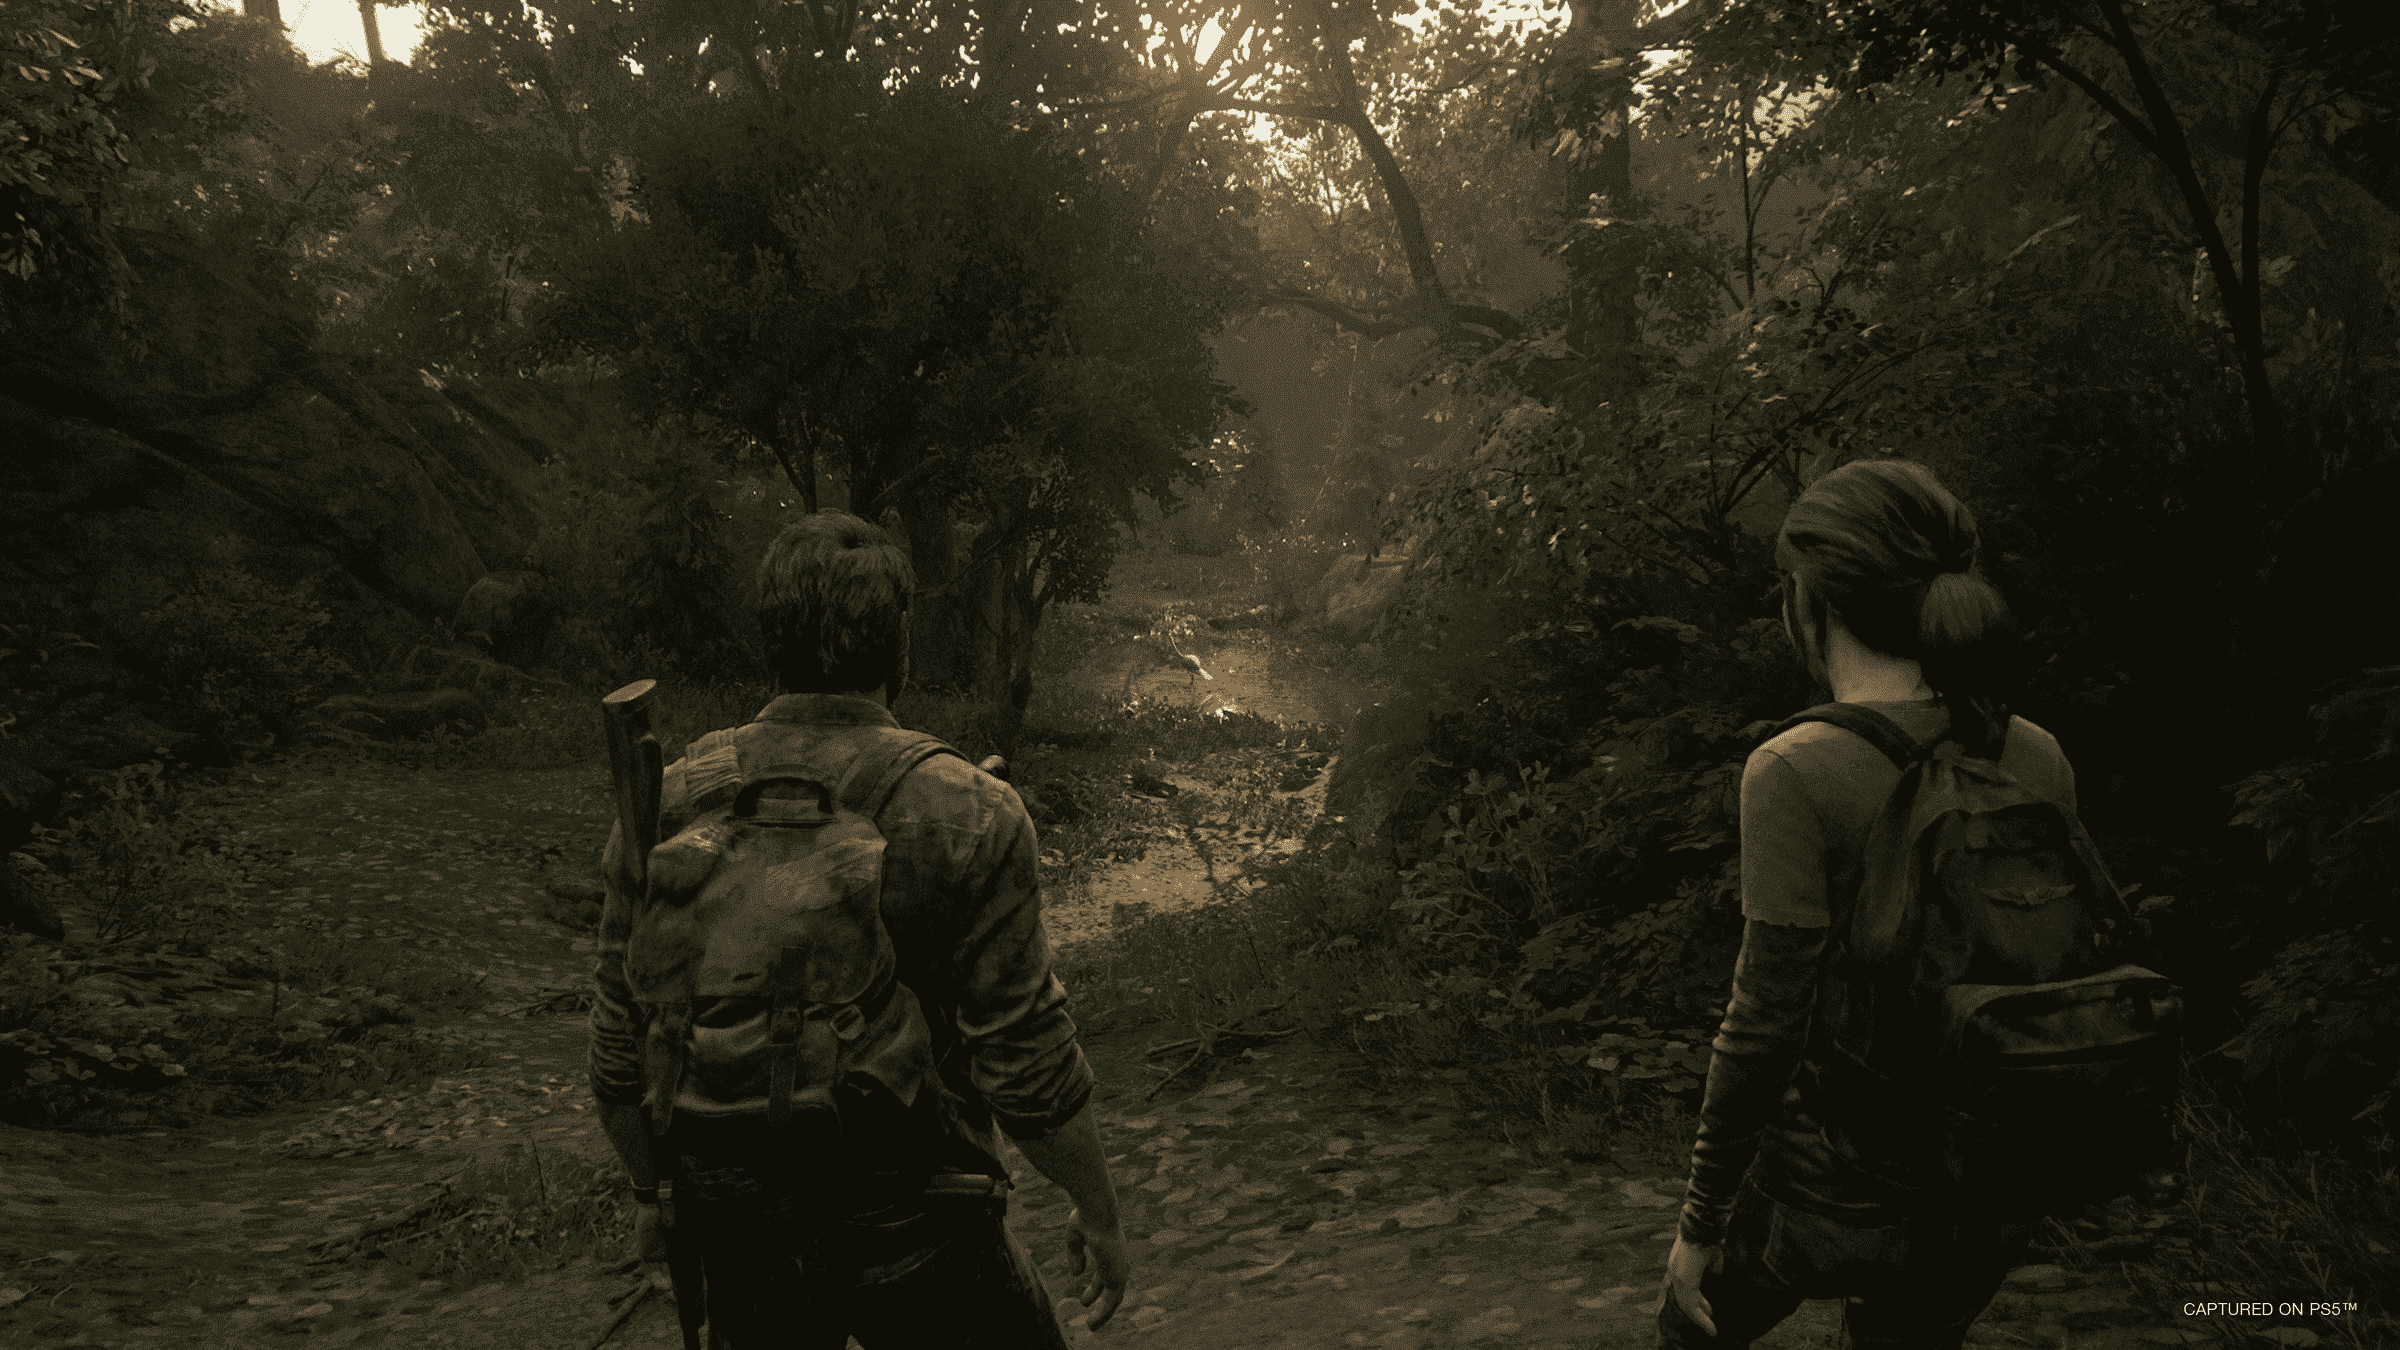 Orman yolunda sırtları bize dönük iki kişi yürüyor.